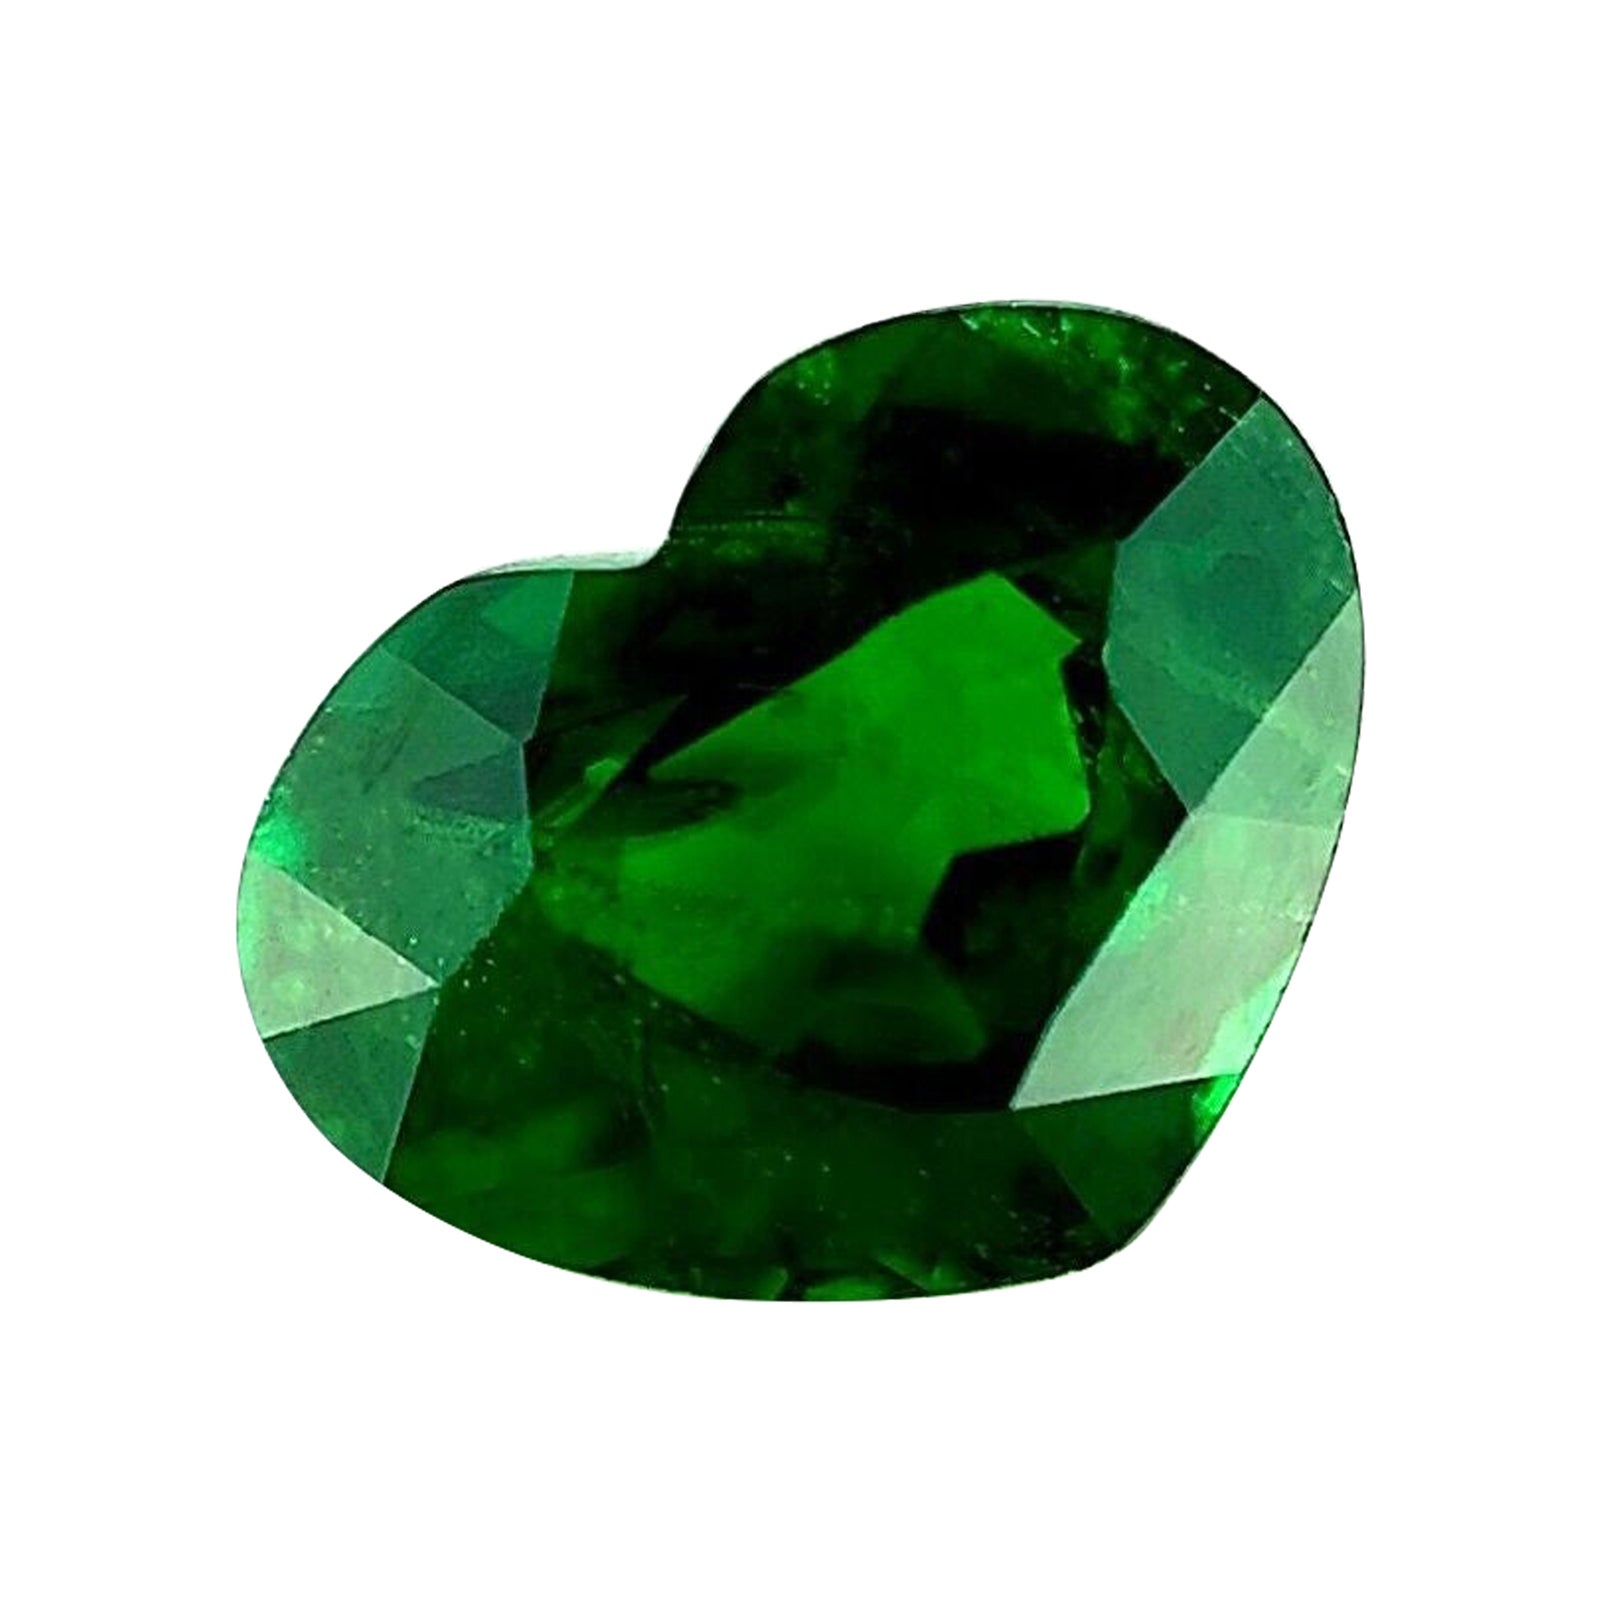 1.42ct Tsavorite Garnet Fine Colour Vivid Green Heart Cut Rare Gem For Sale